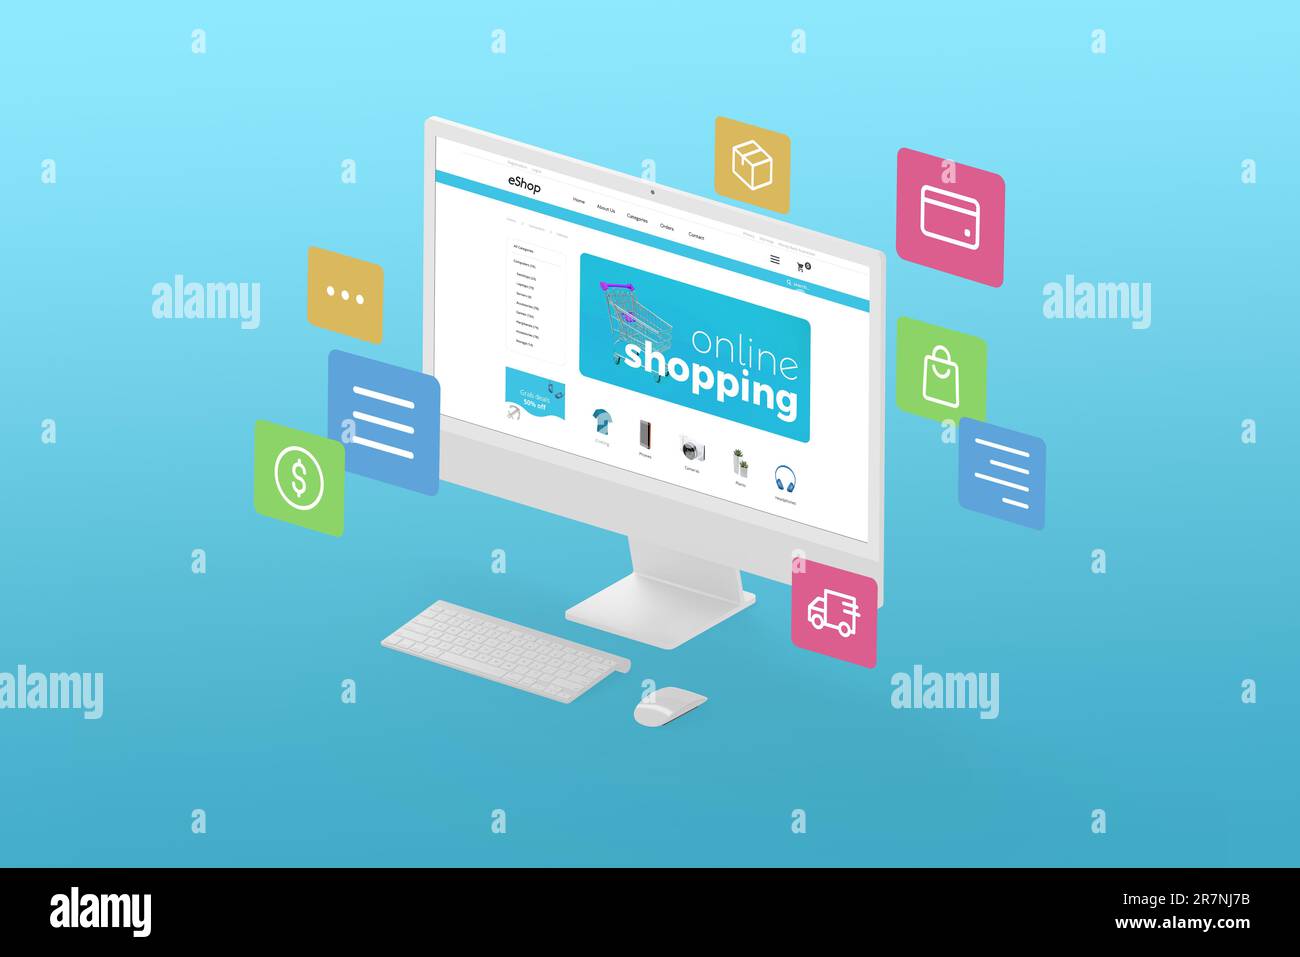 Abbildung des Online-Einkaufs mit Computerdisplay in isometrischer Position und E-Commerce-Webseite mit Produkten. Daneben fliegende Symbole. Blauer Hintergrund Stockfoto